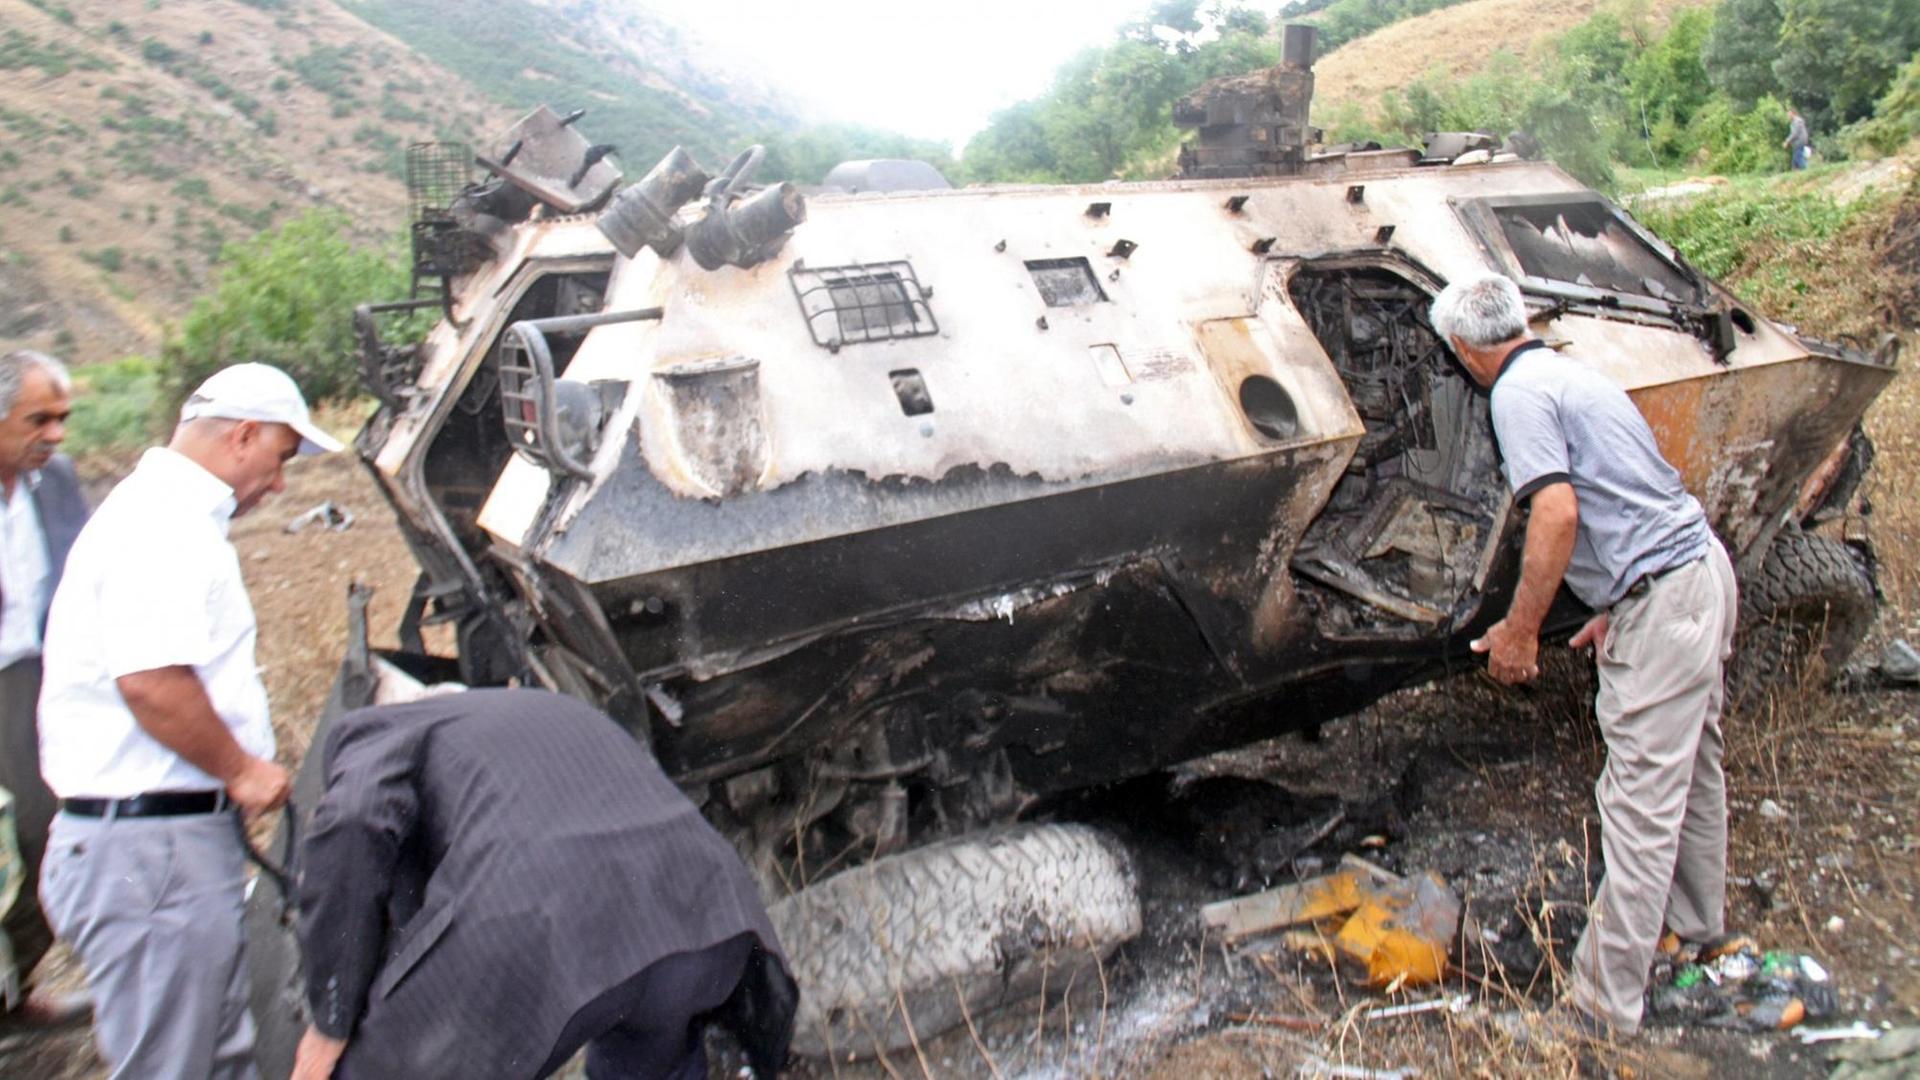 Ein ausgebranntes Fahrzeug der türkischen Armee liegt in einer gebirgigen Gegend. Mehrere Kurden stehen daneben und untersuchen das Wrack.